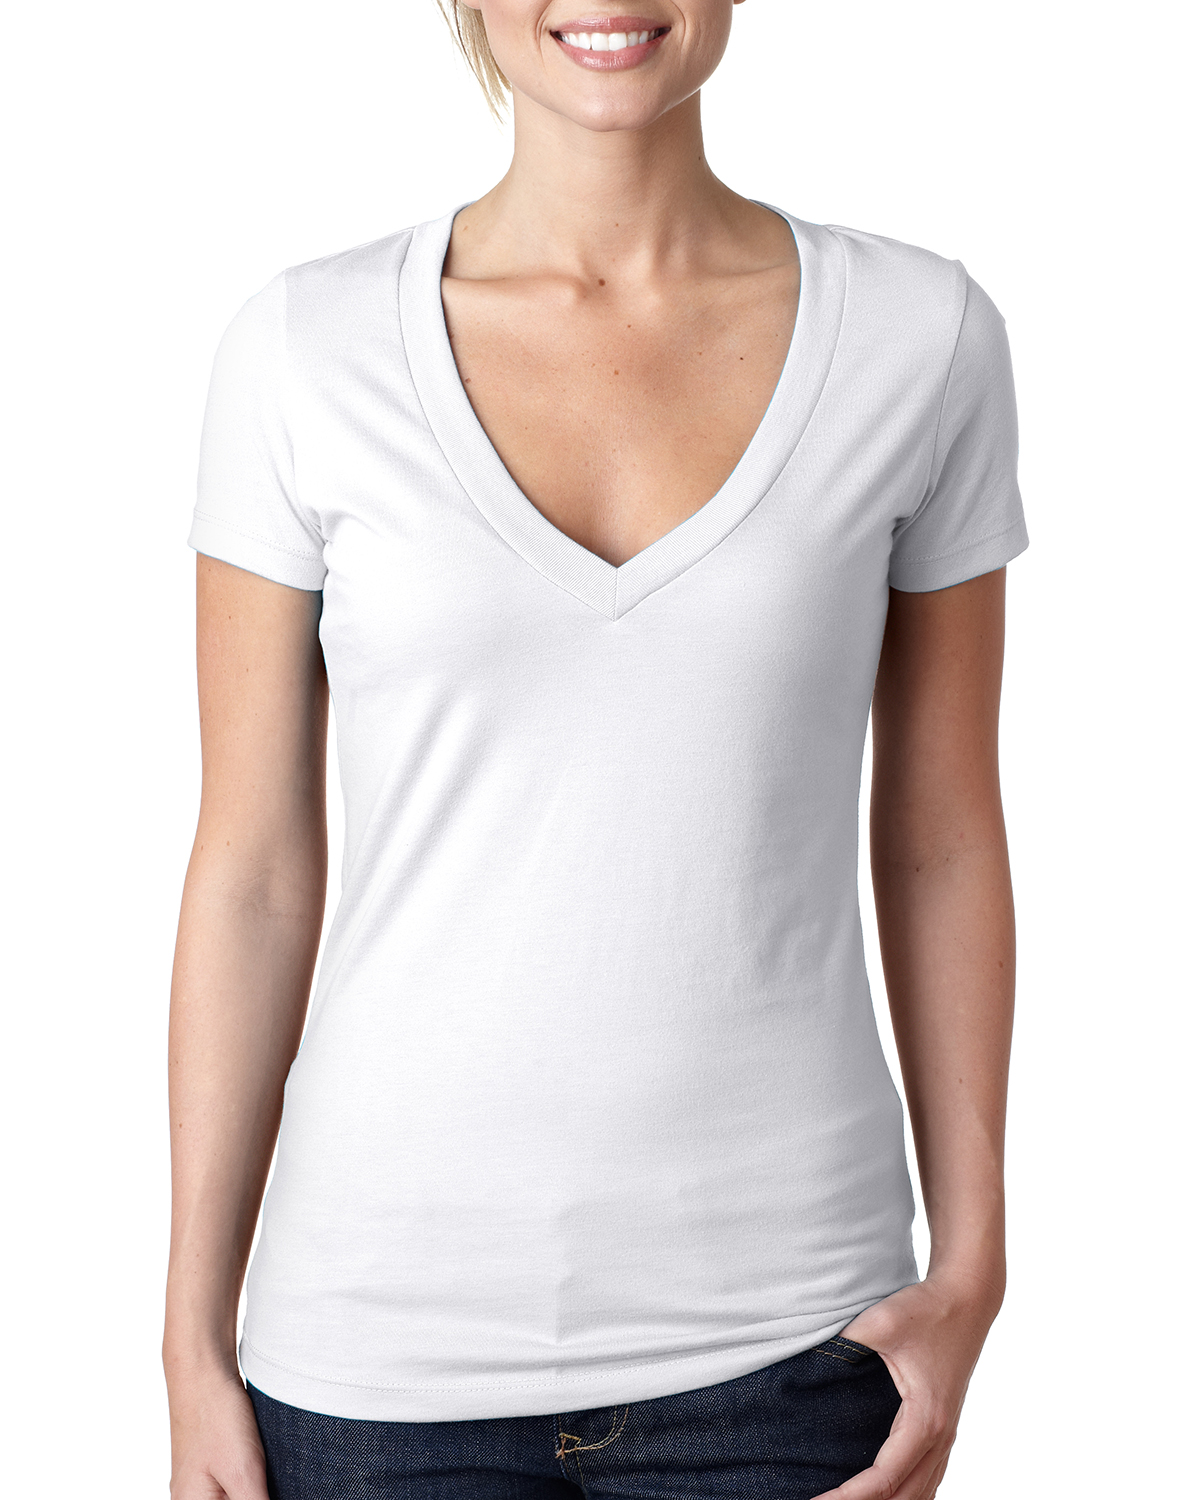 Women's V neck t-shirt